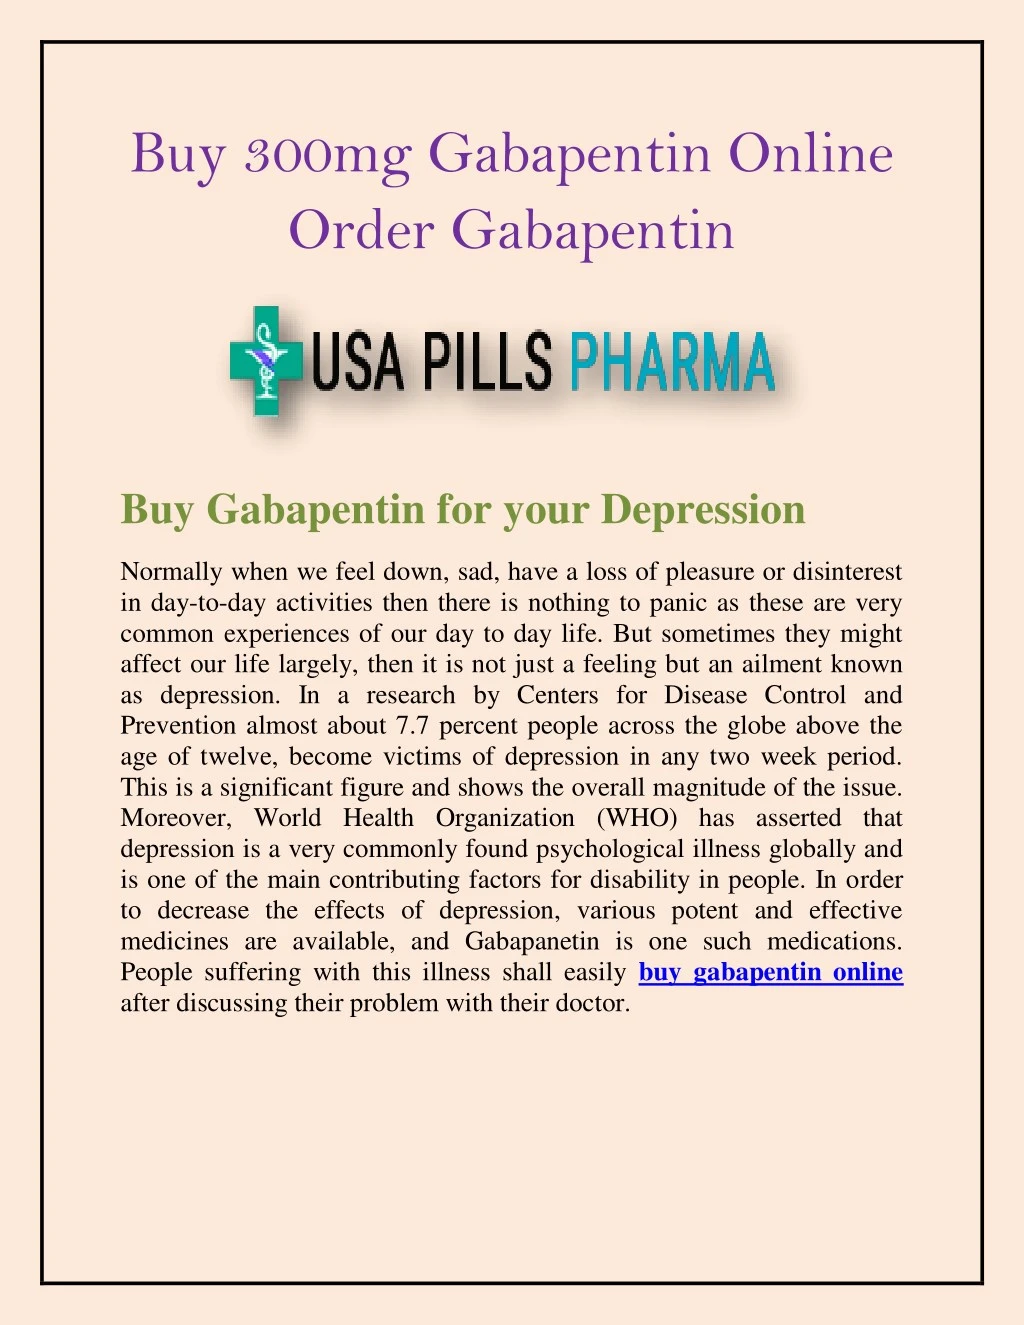 buy 300mg gabapentin online order gabapentin